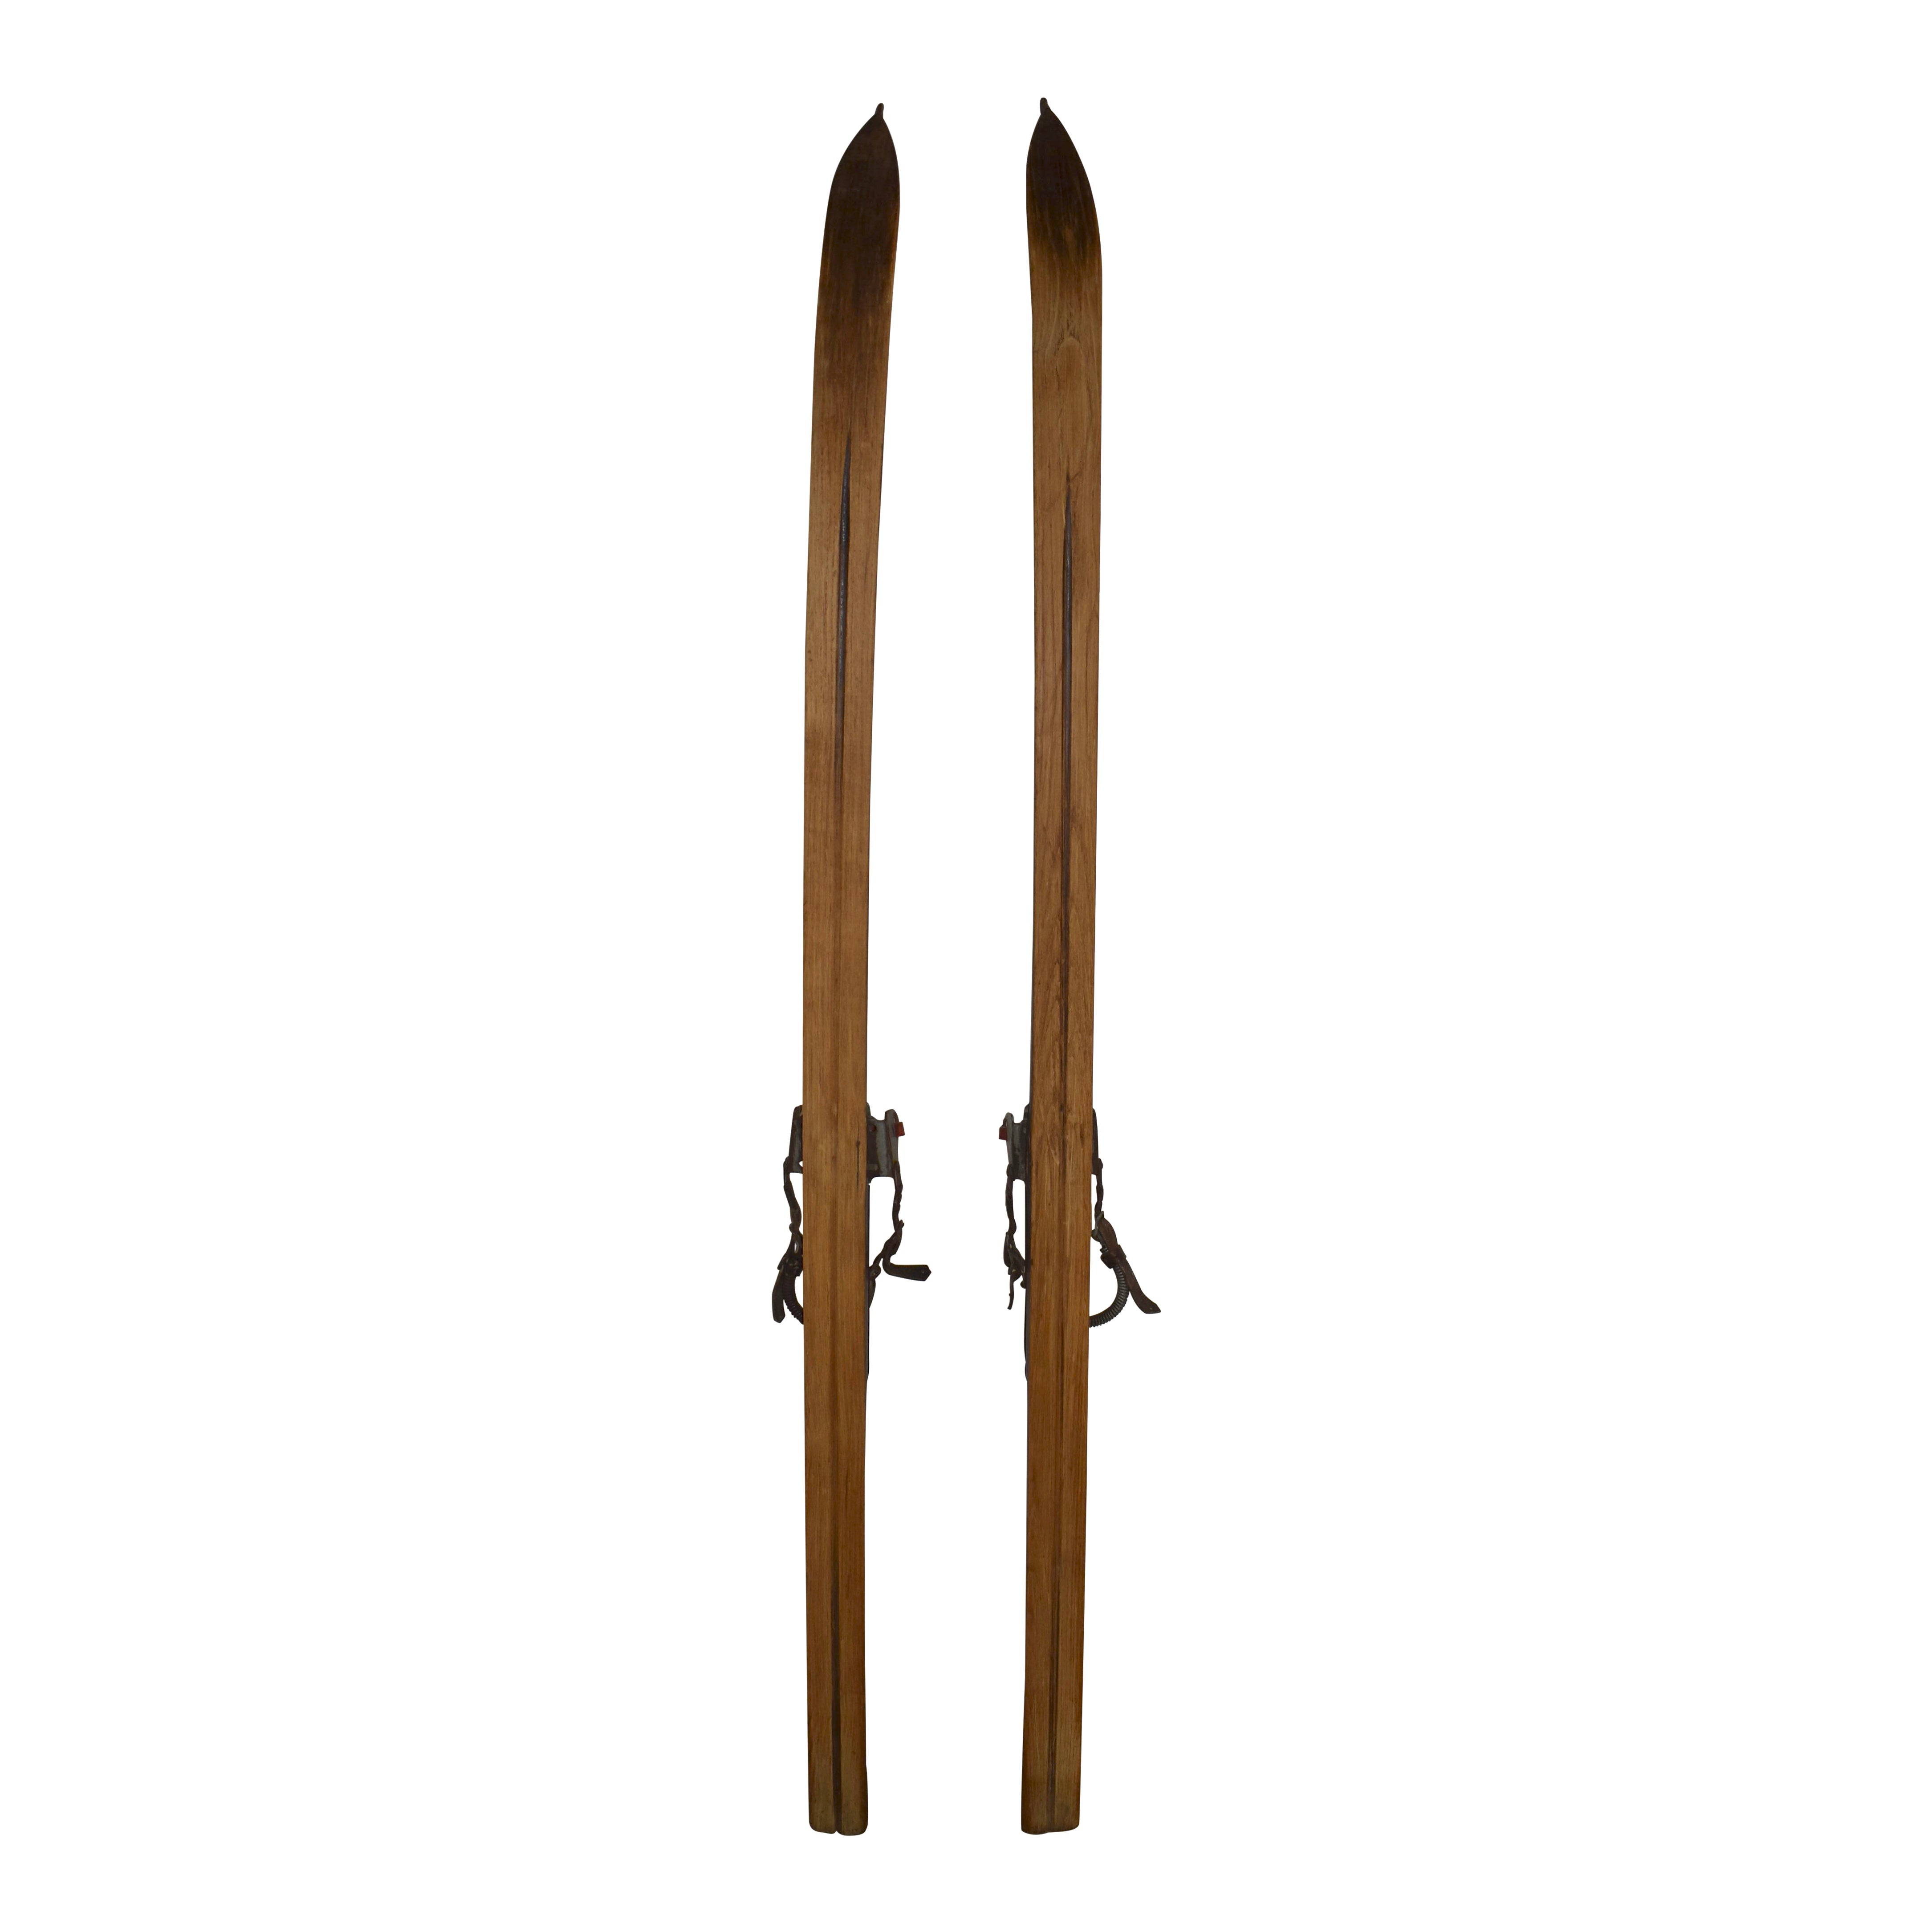 Wooden Skis with Metal Bindings